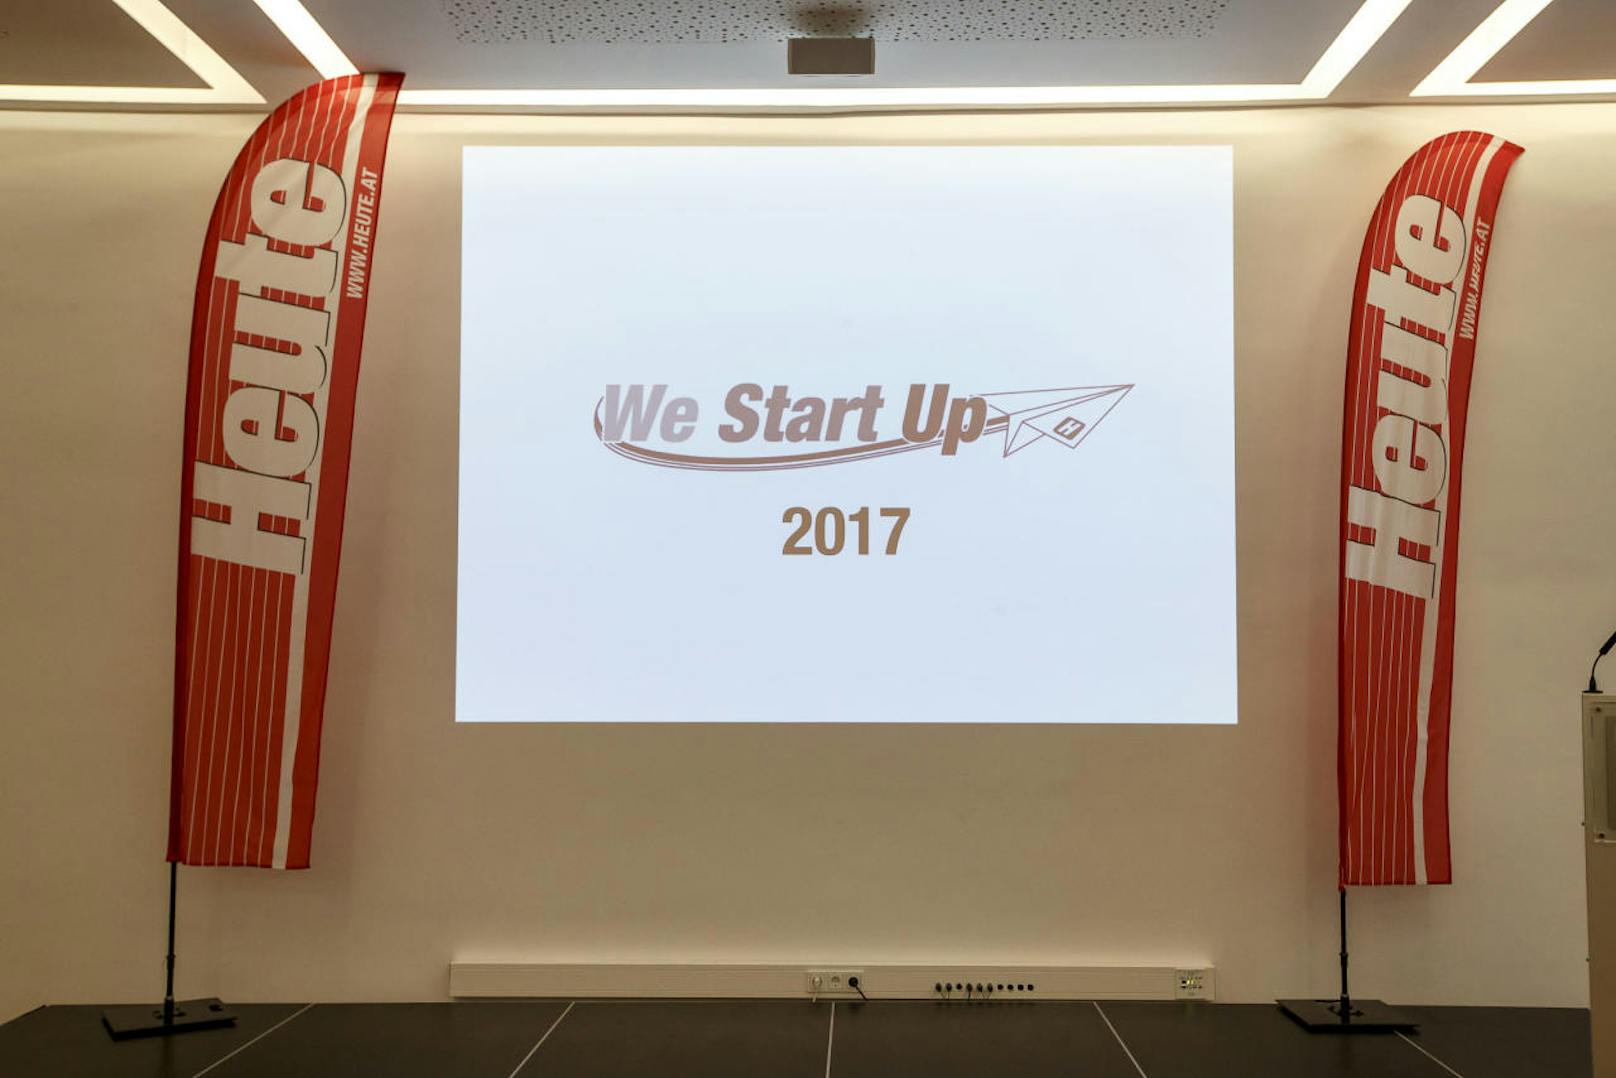 Vorhang auf, Bühne frei für das große Finale von "We Start Up 2017"